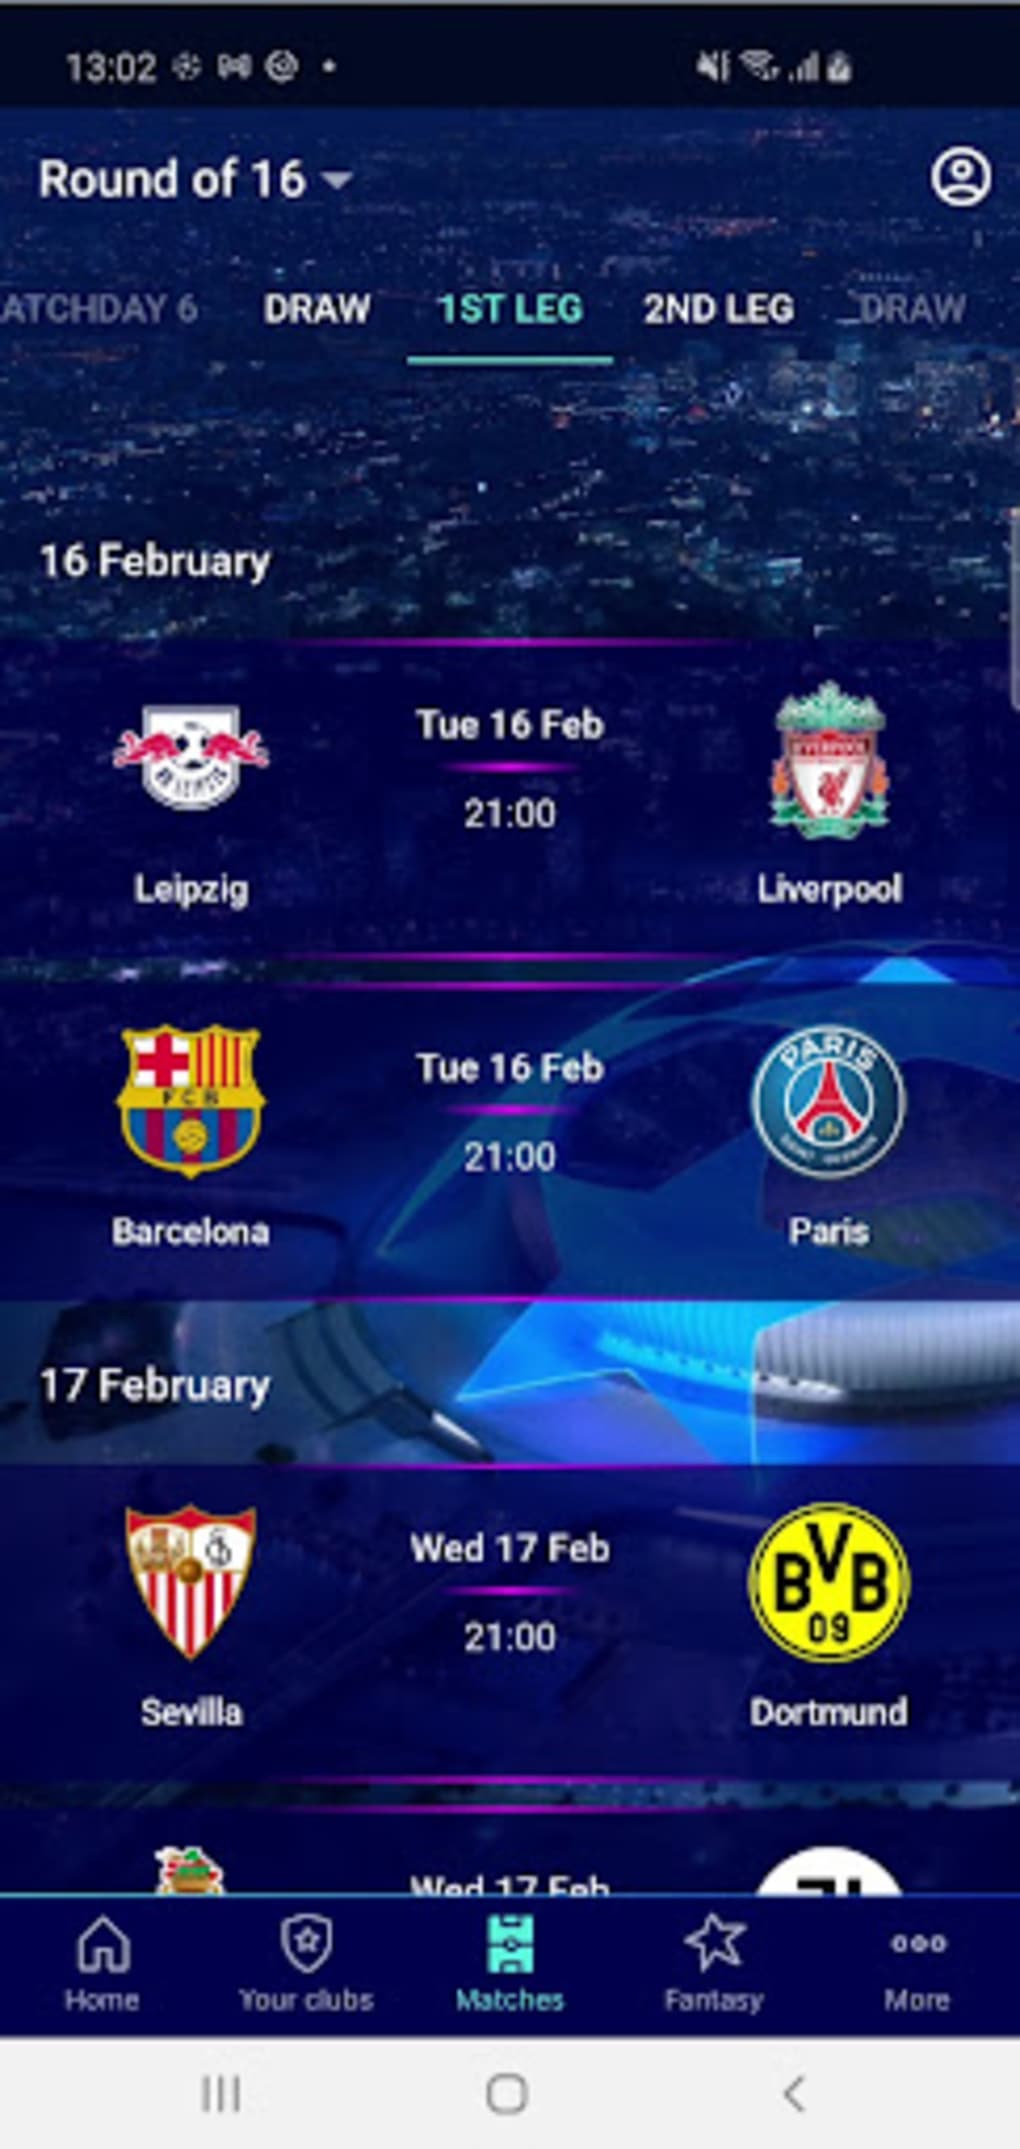 Sporting CP - Já temos datas e horas para os jogos da UEFA Champions League  ✨ Marca já na tua agenda 📝 Qual o jogo que mais queres ver? 🤔 #UCL